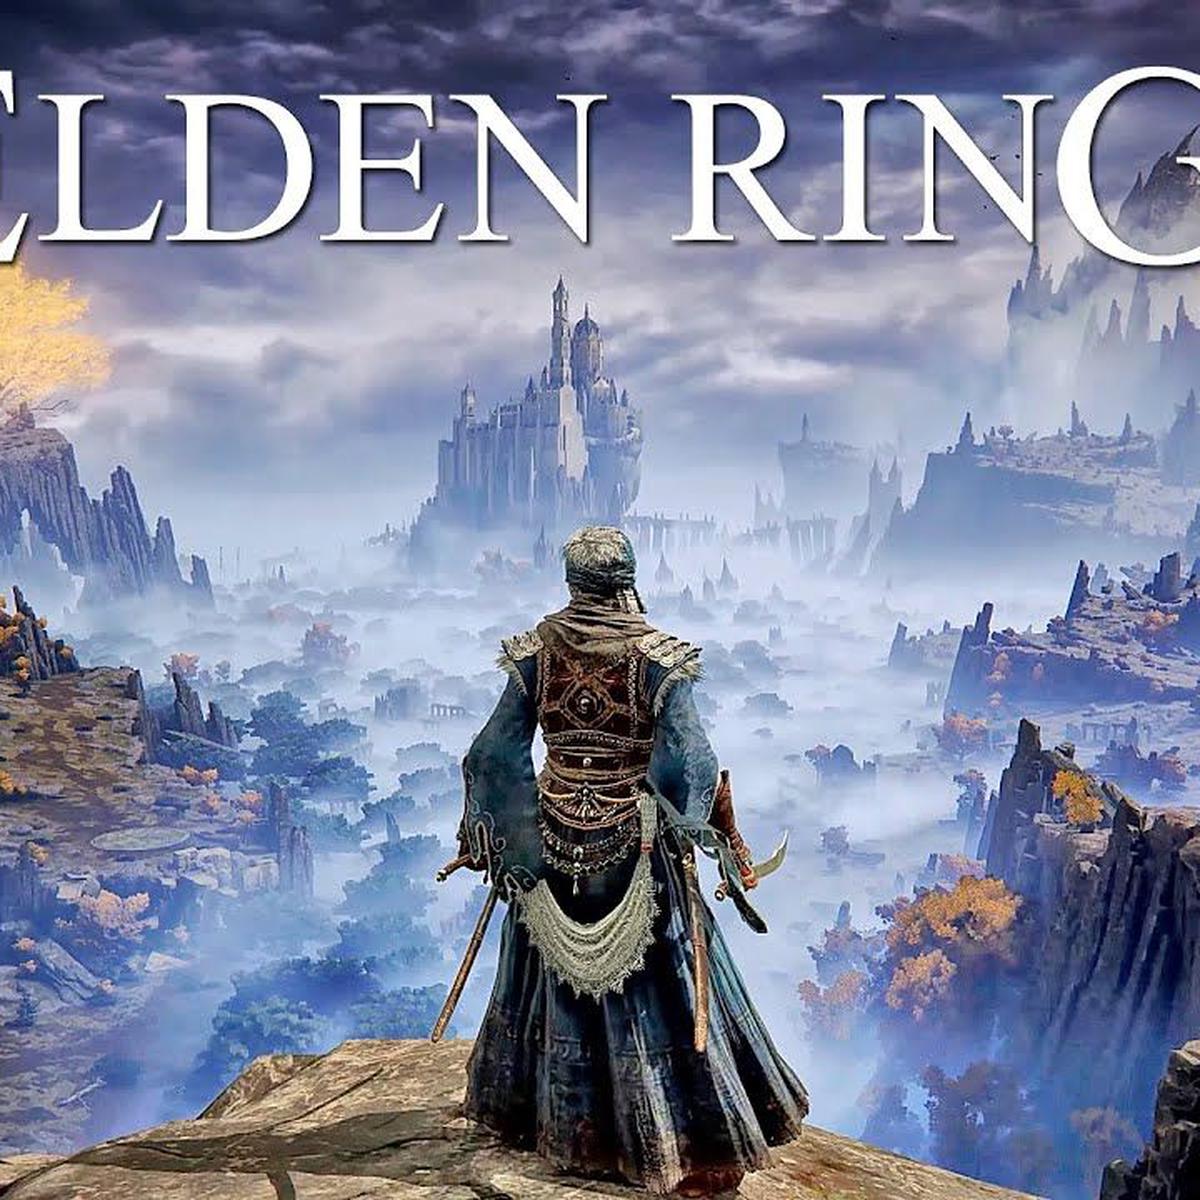 Game Awards 2022: God of War y Elden Ring son los más nominados, ¿cómo  puedes votar por el juego del año? - El Clavo